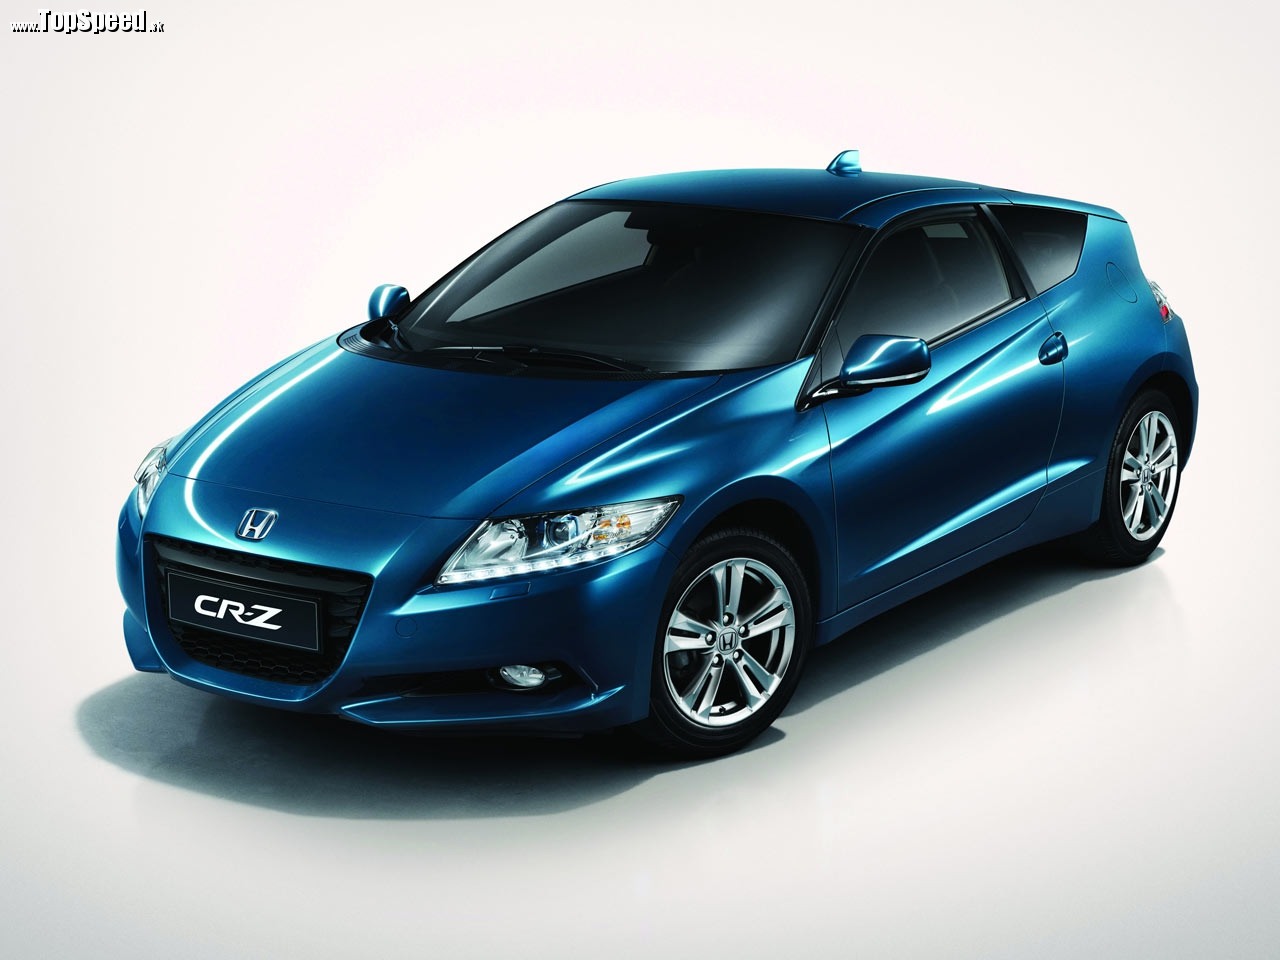 Akciová cena Hondy CR-Z klesla na 16 500€. V ponuke bude do vypredania zásob.